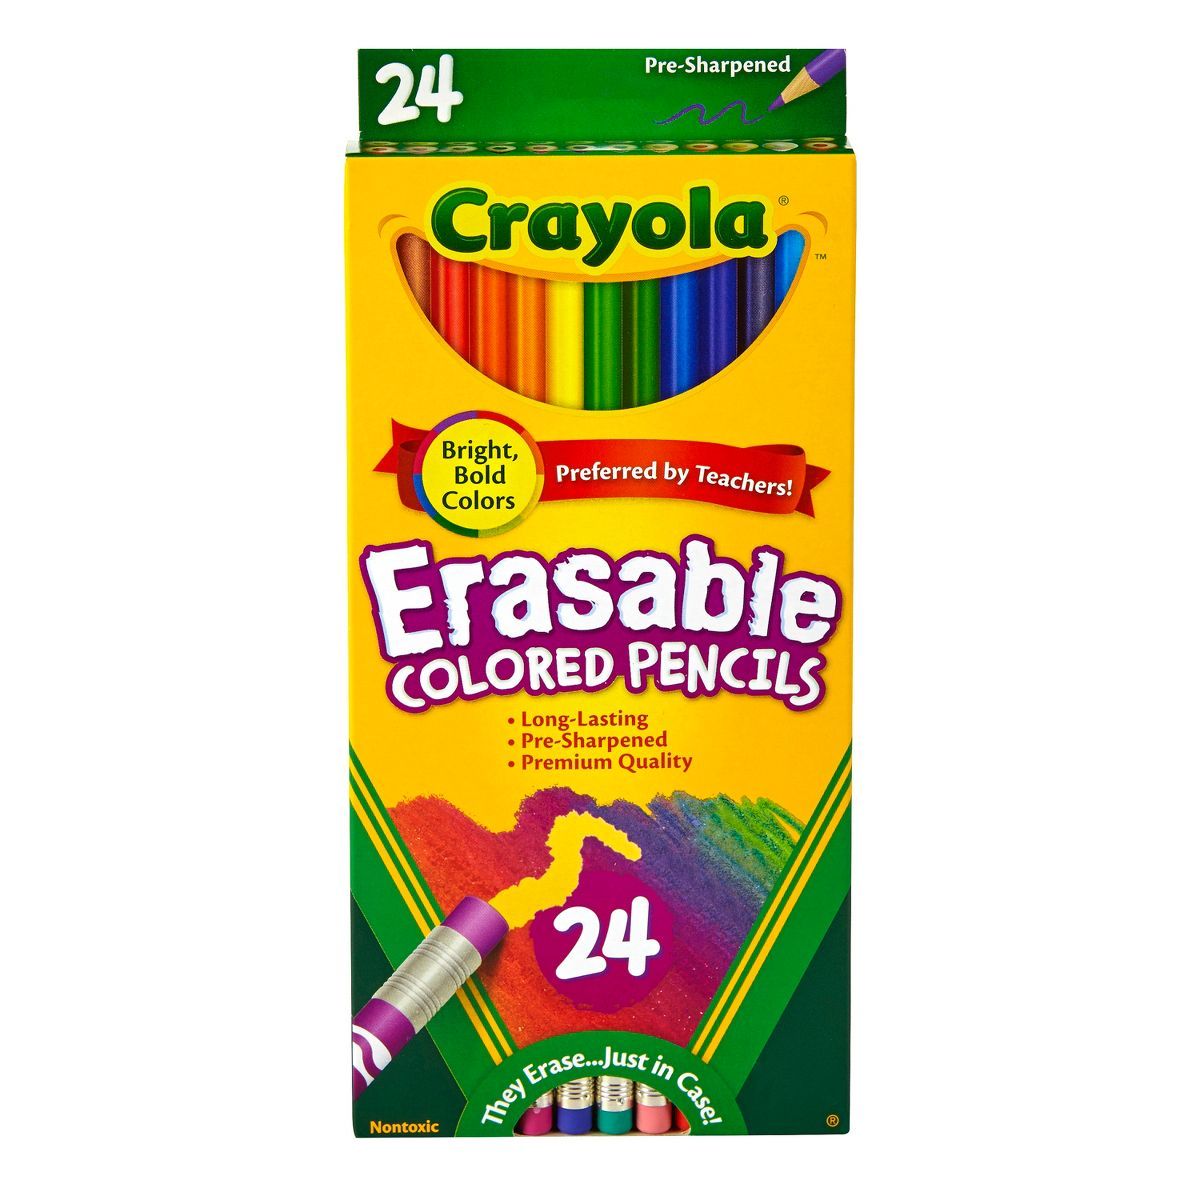 Crayola Erasable Colored Pencils 24ct | Target